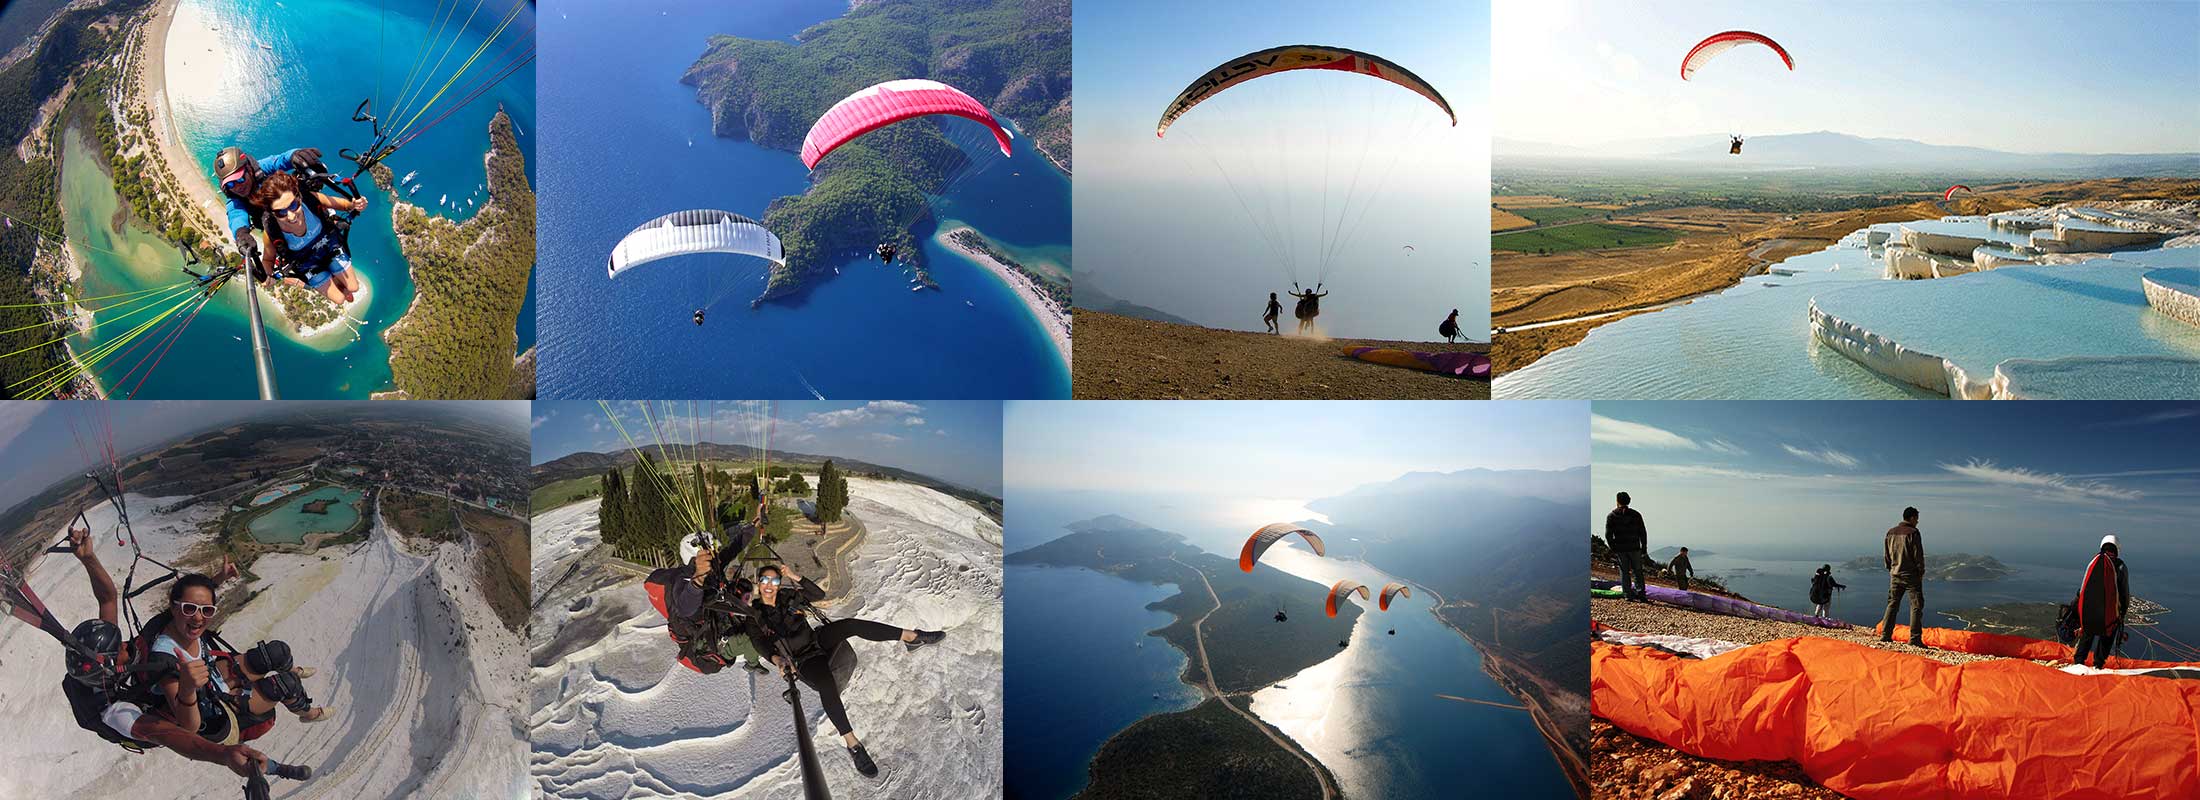 paragliding-turkebabadag-oludeniz-fethiye-pamukkale-kas